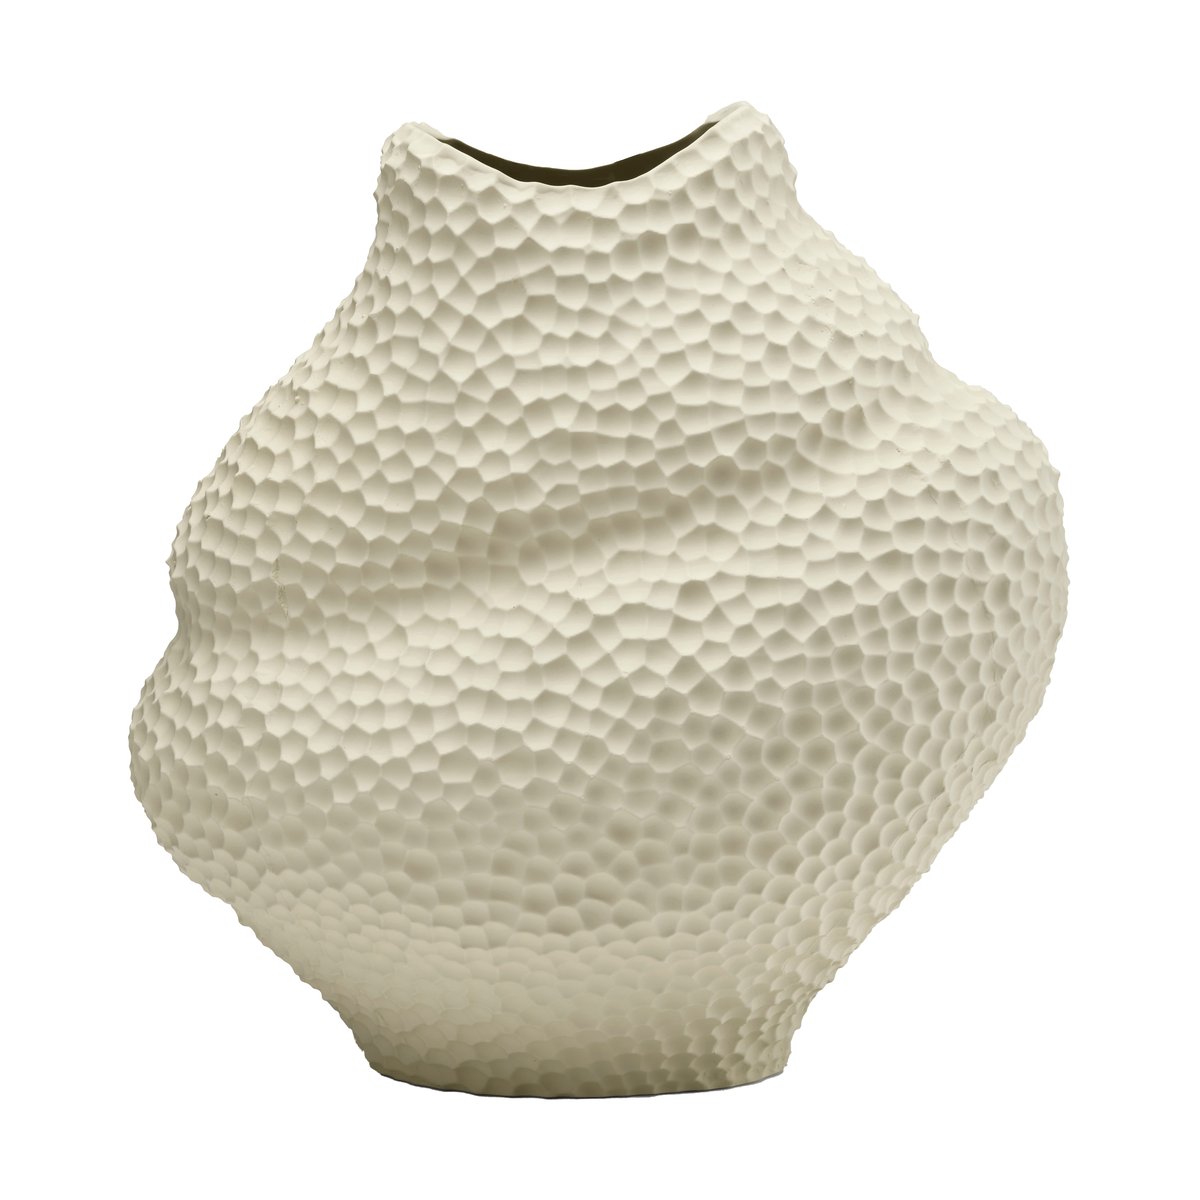 Bilde av Cooee Design Isla wide vase 32 cm Lin